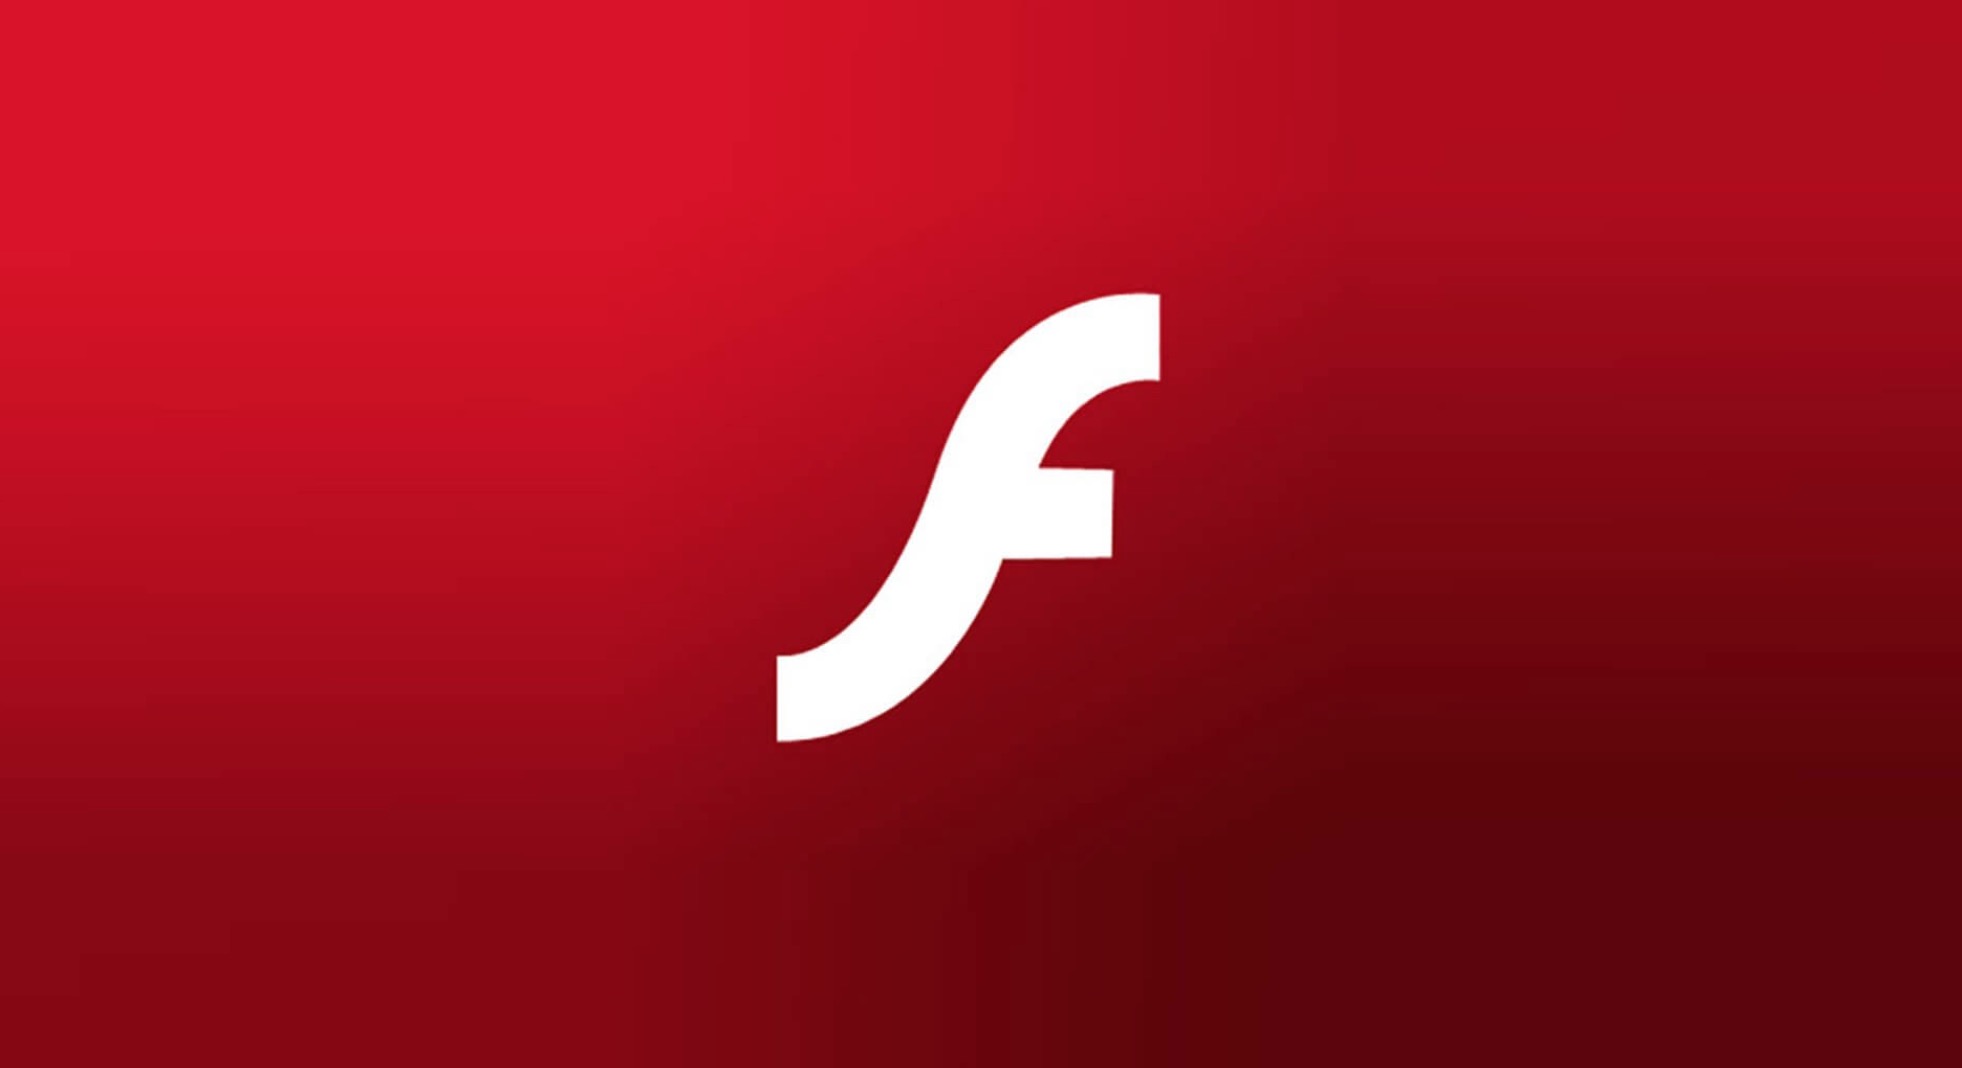 Come scaricare Adobe Flash Player gratis